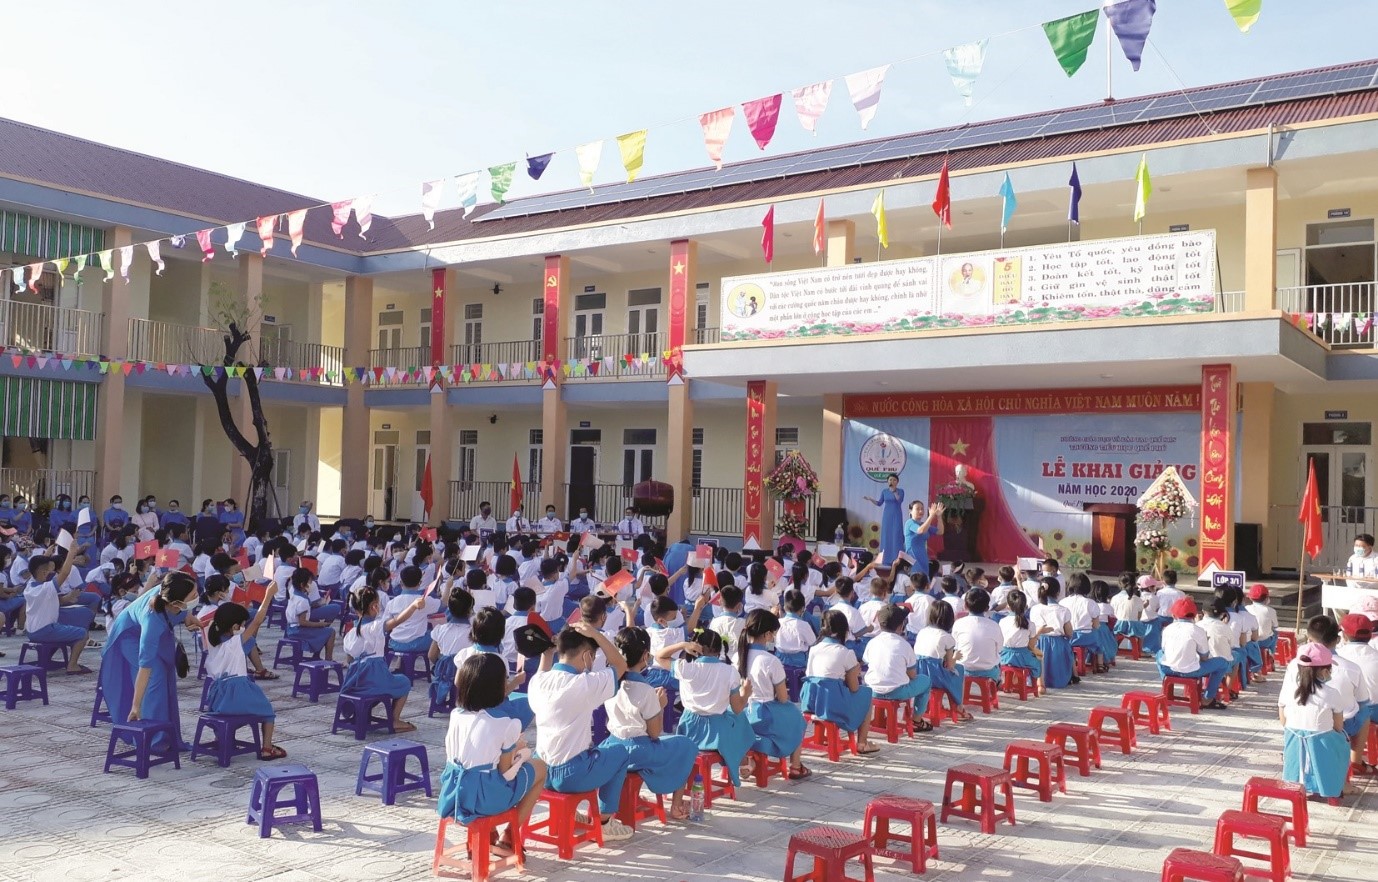 Trường Tiểu học Quế Phú (huyện Quế Sơn, Quảng Nam) được đầu tư xây mới kiên cố, khang trang, được đưa vào sử dụng đúng dịp khai giảng năm học mới 2020 - 2021